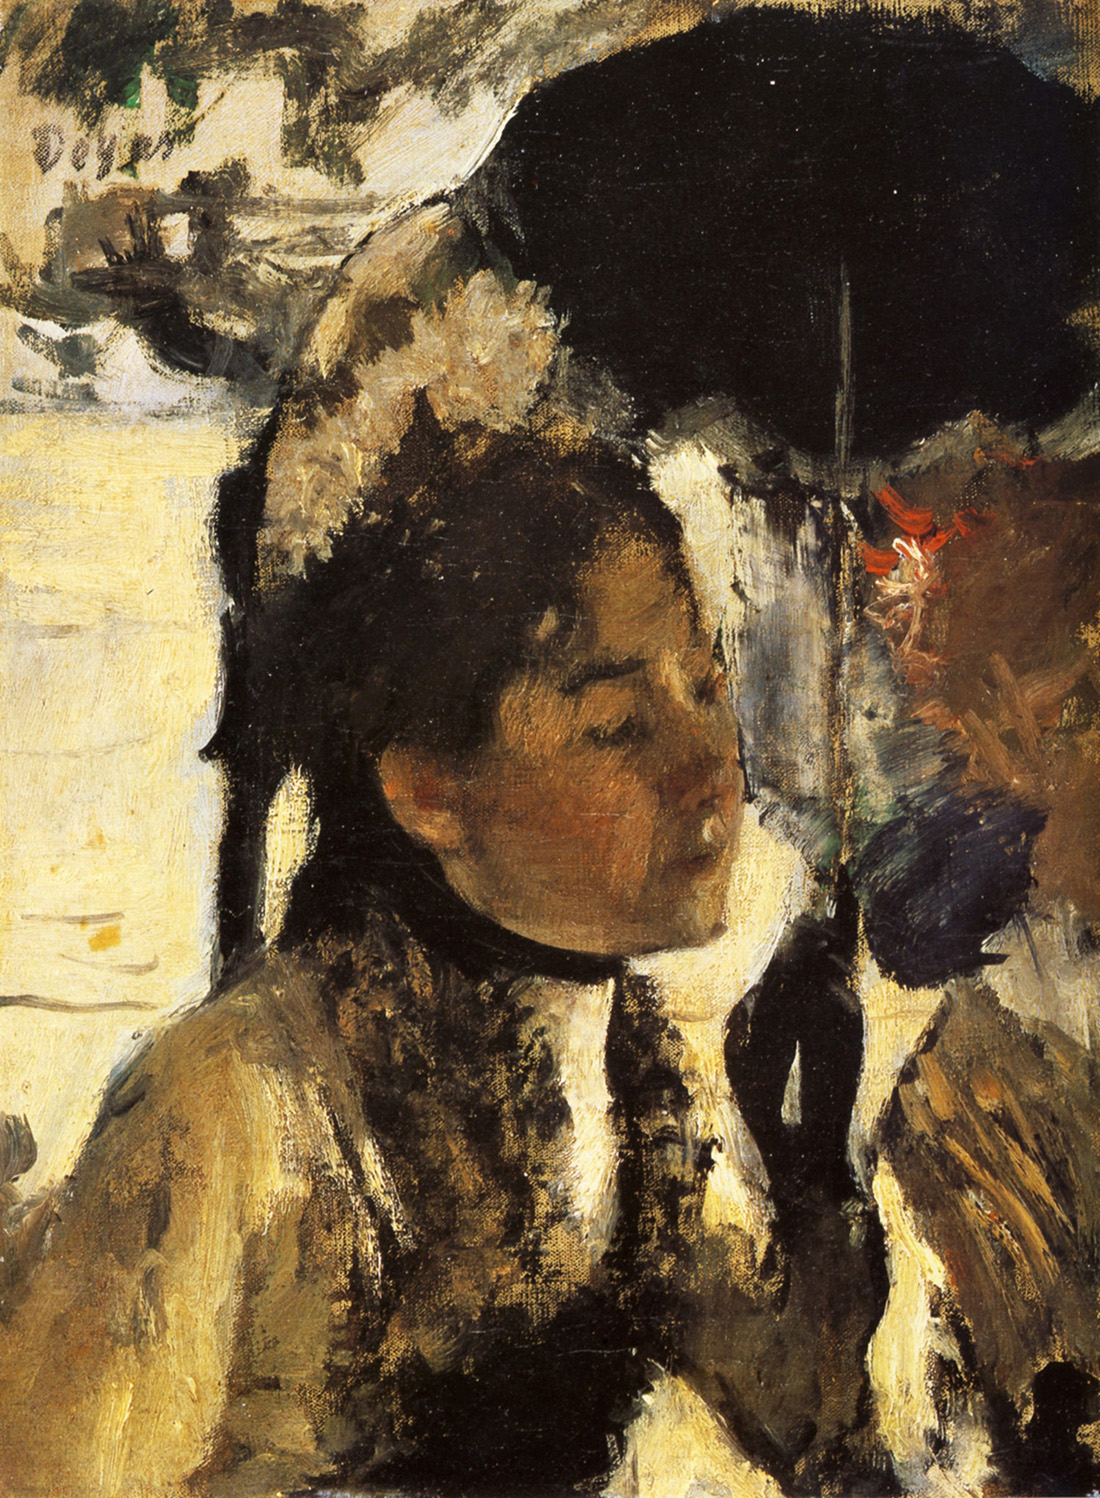 Эдгар Дега. "Тюильри, женщина с зонтиком". 1877.